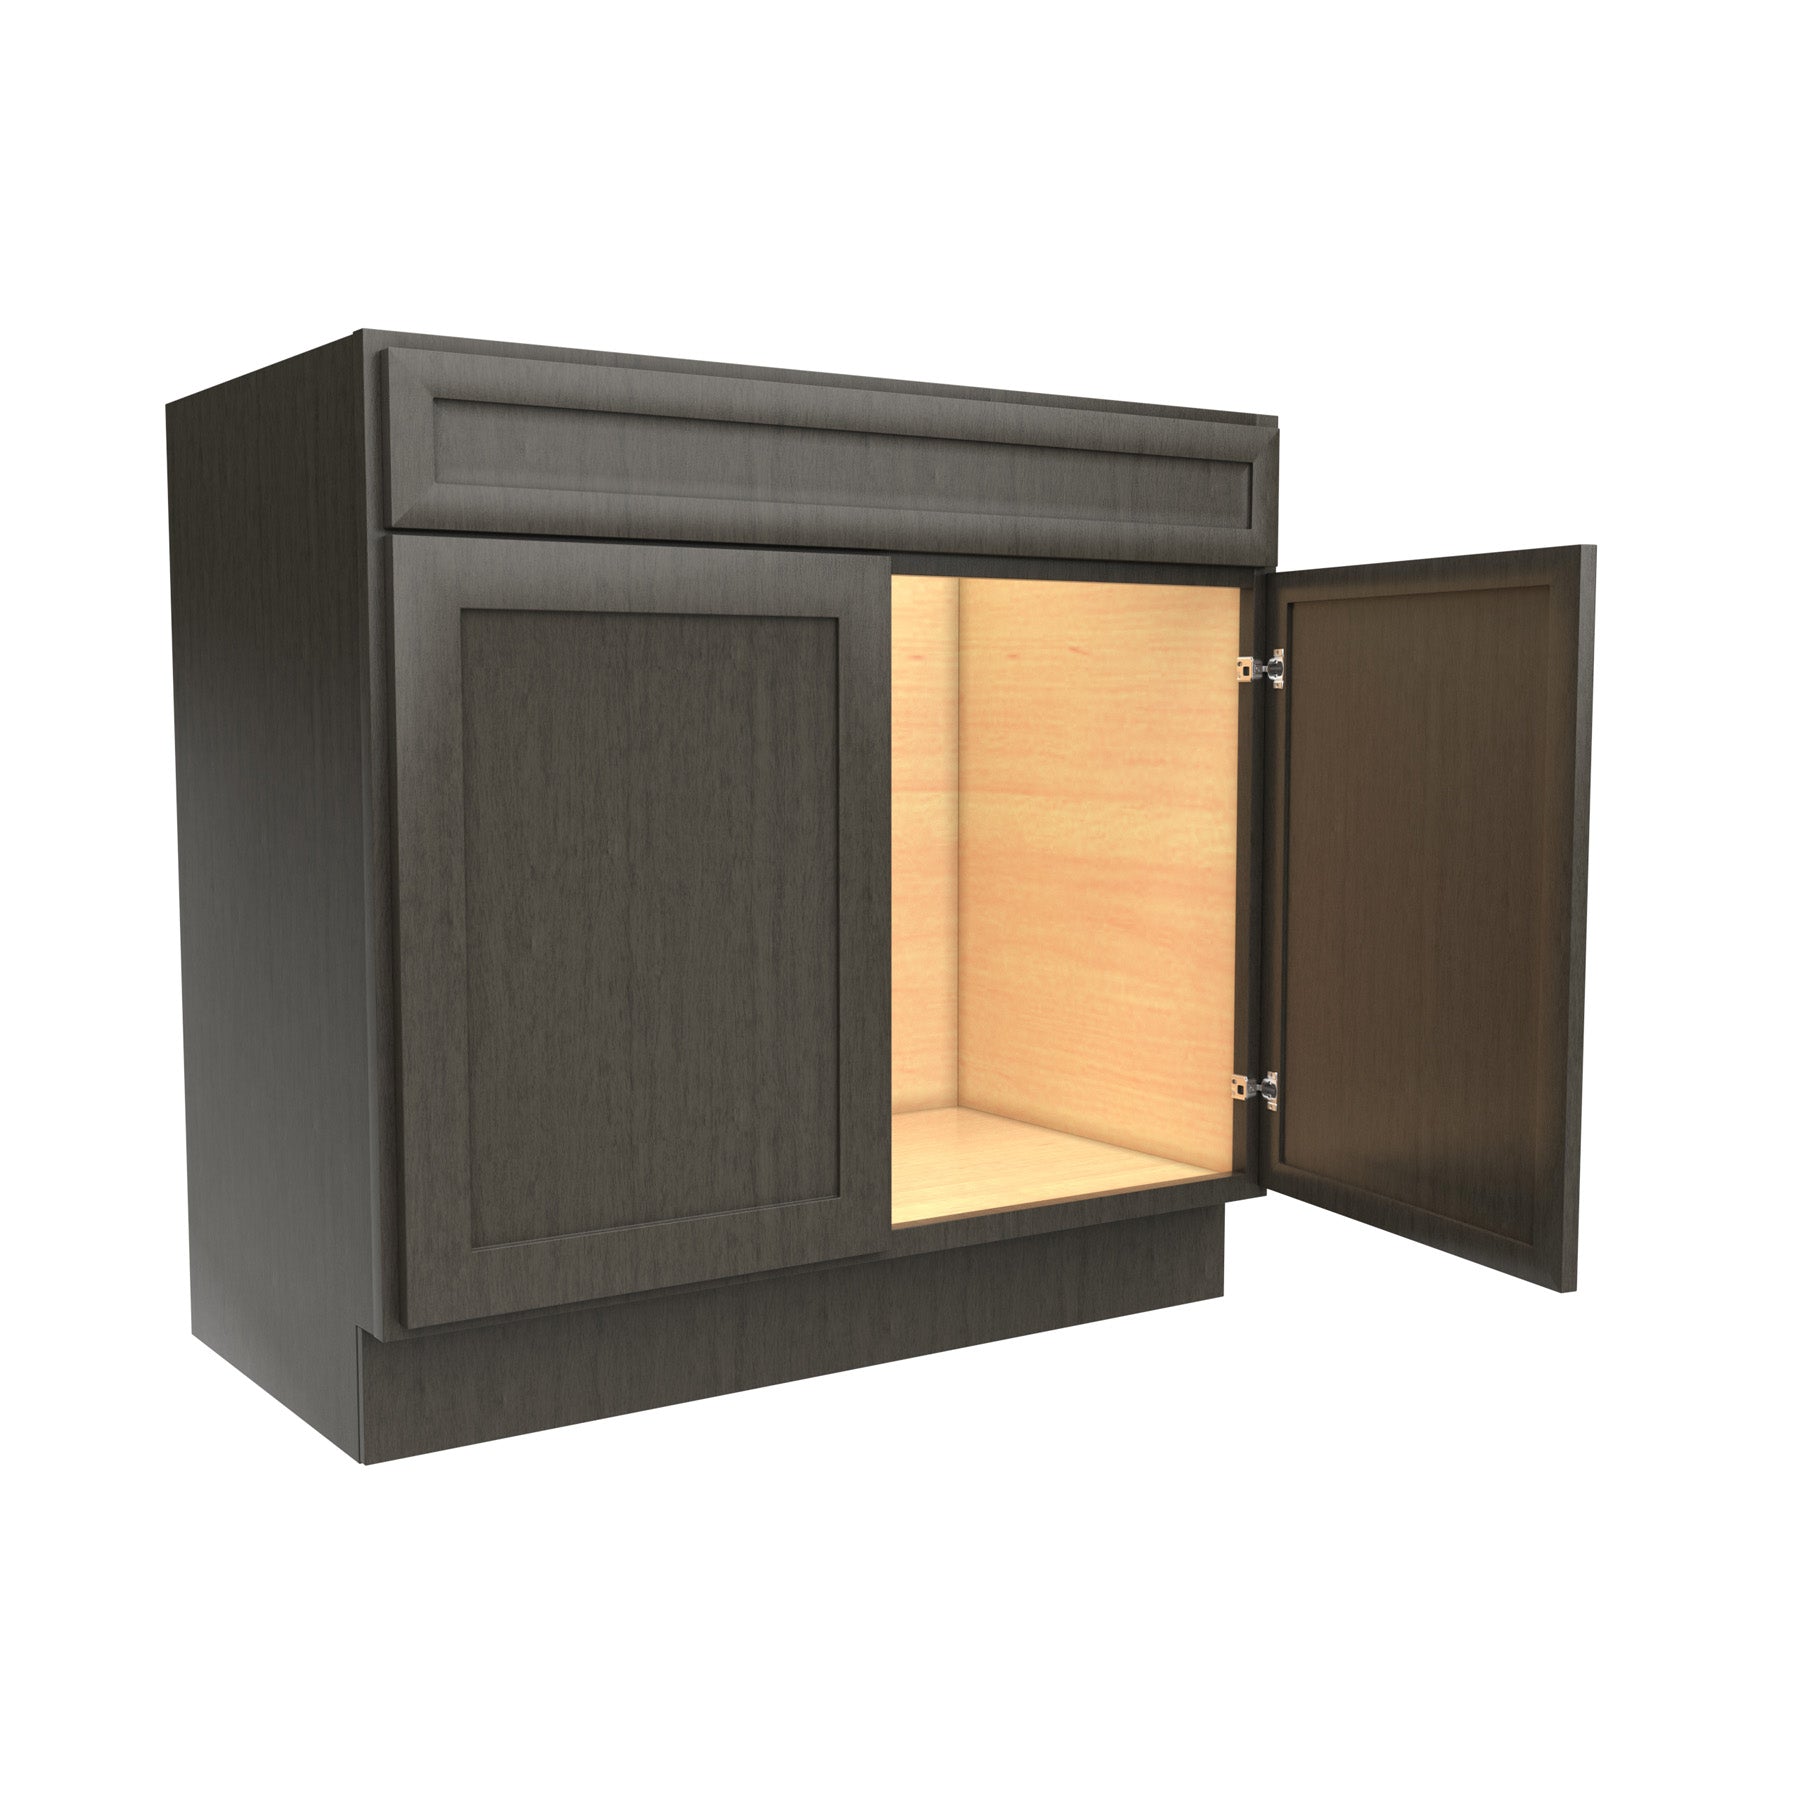 RTA - Elegant Smoky Grey - Double Door Vanity Sink Base Cabinet | 36"W x 34.5"H x 21"D